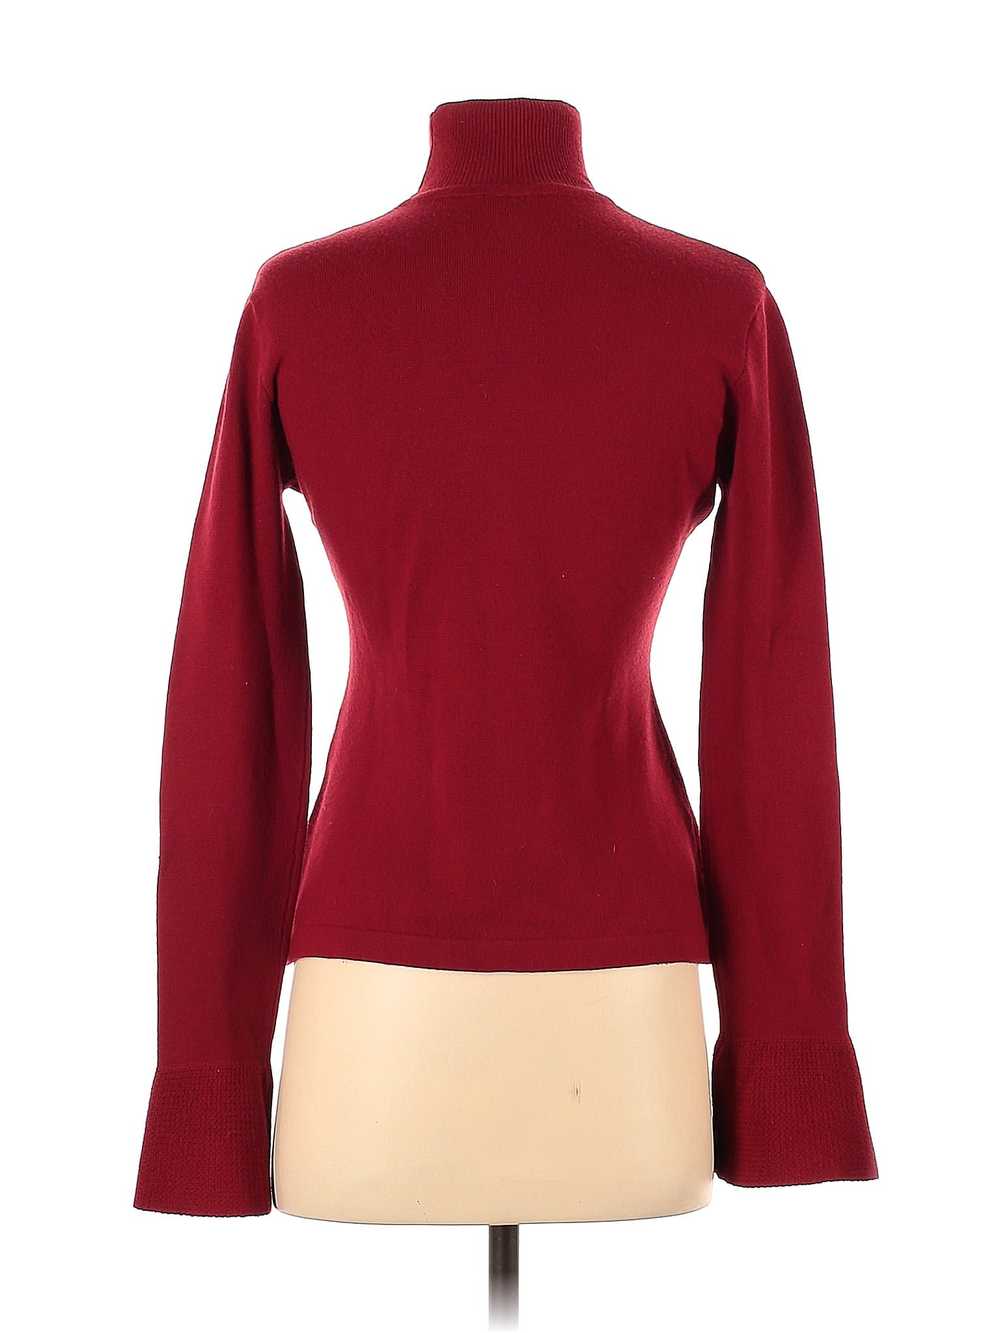 Emanuel Ungaro Women Red Turtleneck Sweater S - image 2